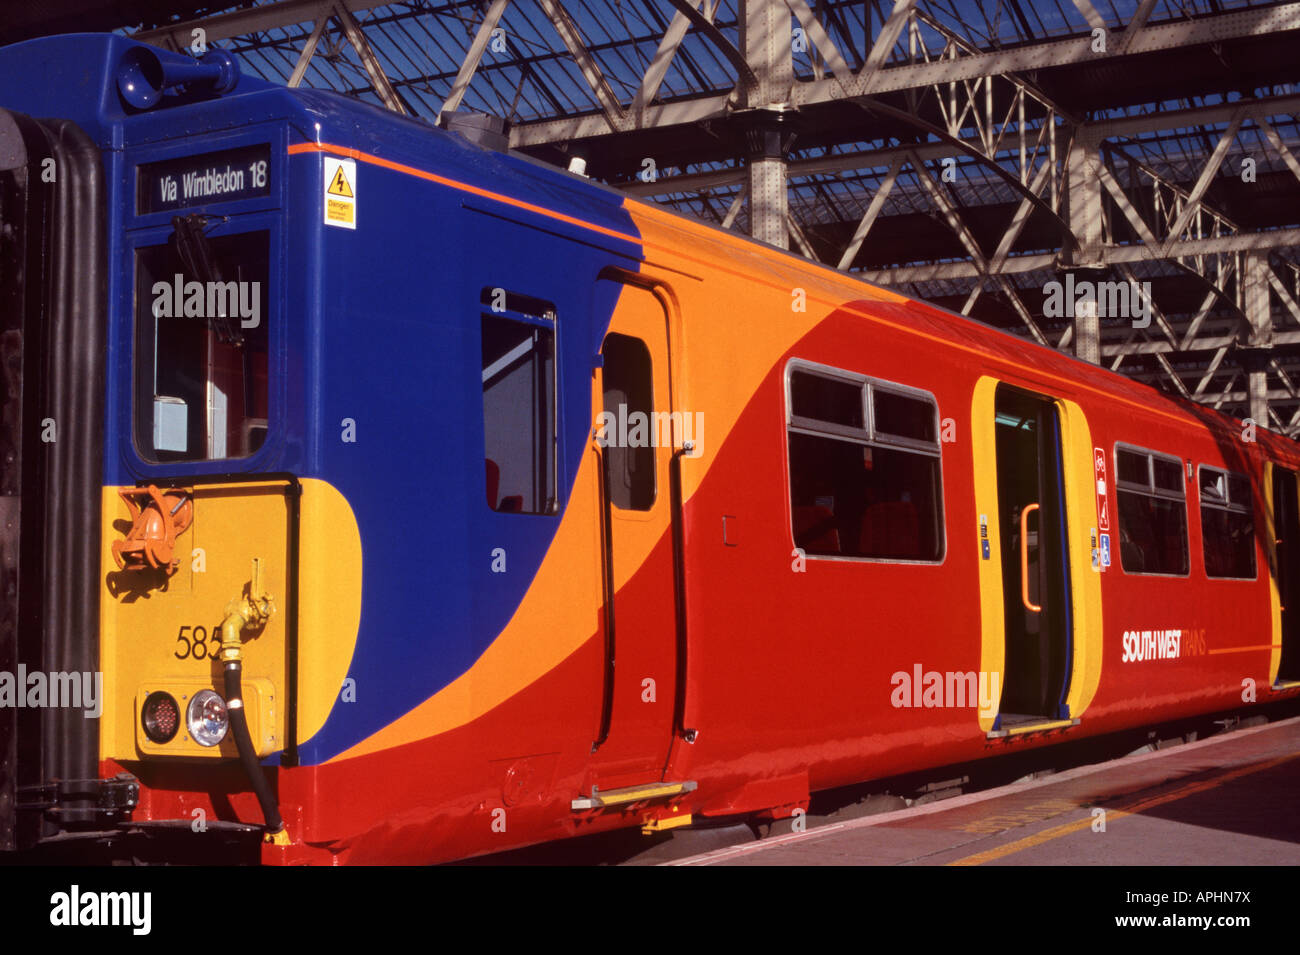 Elettrico treno dei pendolari motore e carrello che mostra colore rosso brillante, giallo arancio e blu della livrea e alta visibilità marcature della porta Foto Stock